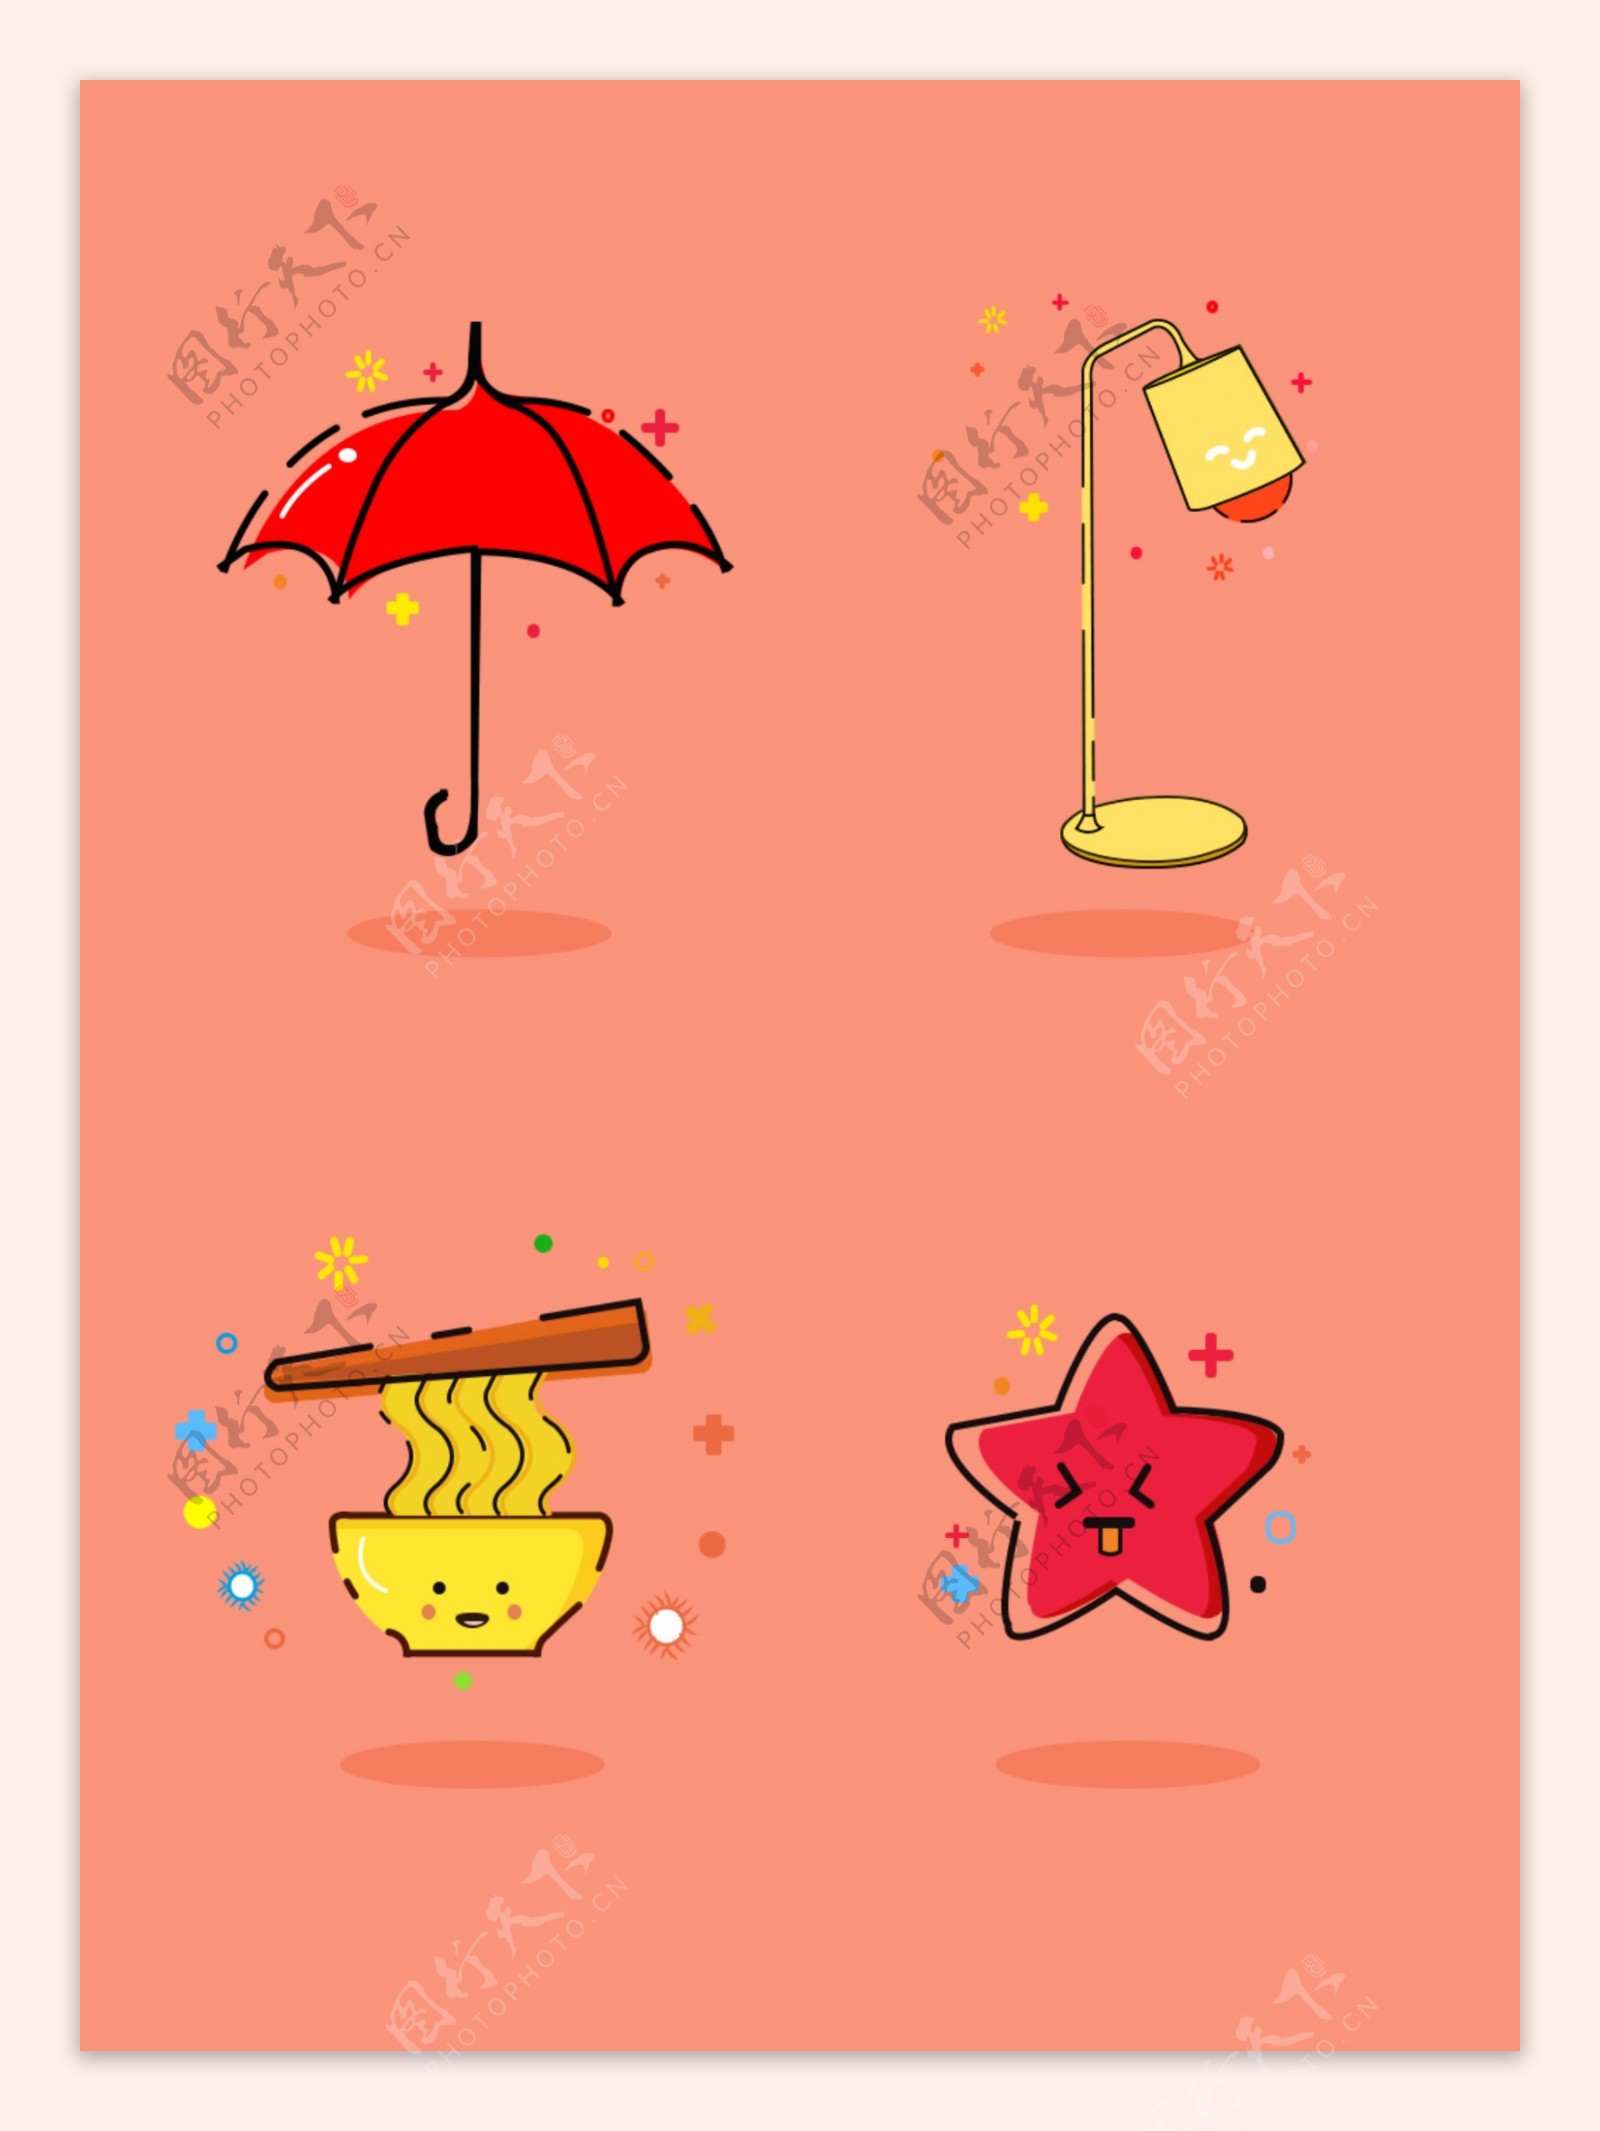 卡通物品雨伞台灯面条星星Mbe风简约有趣可爱小图标